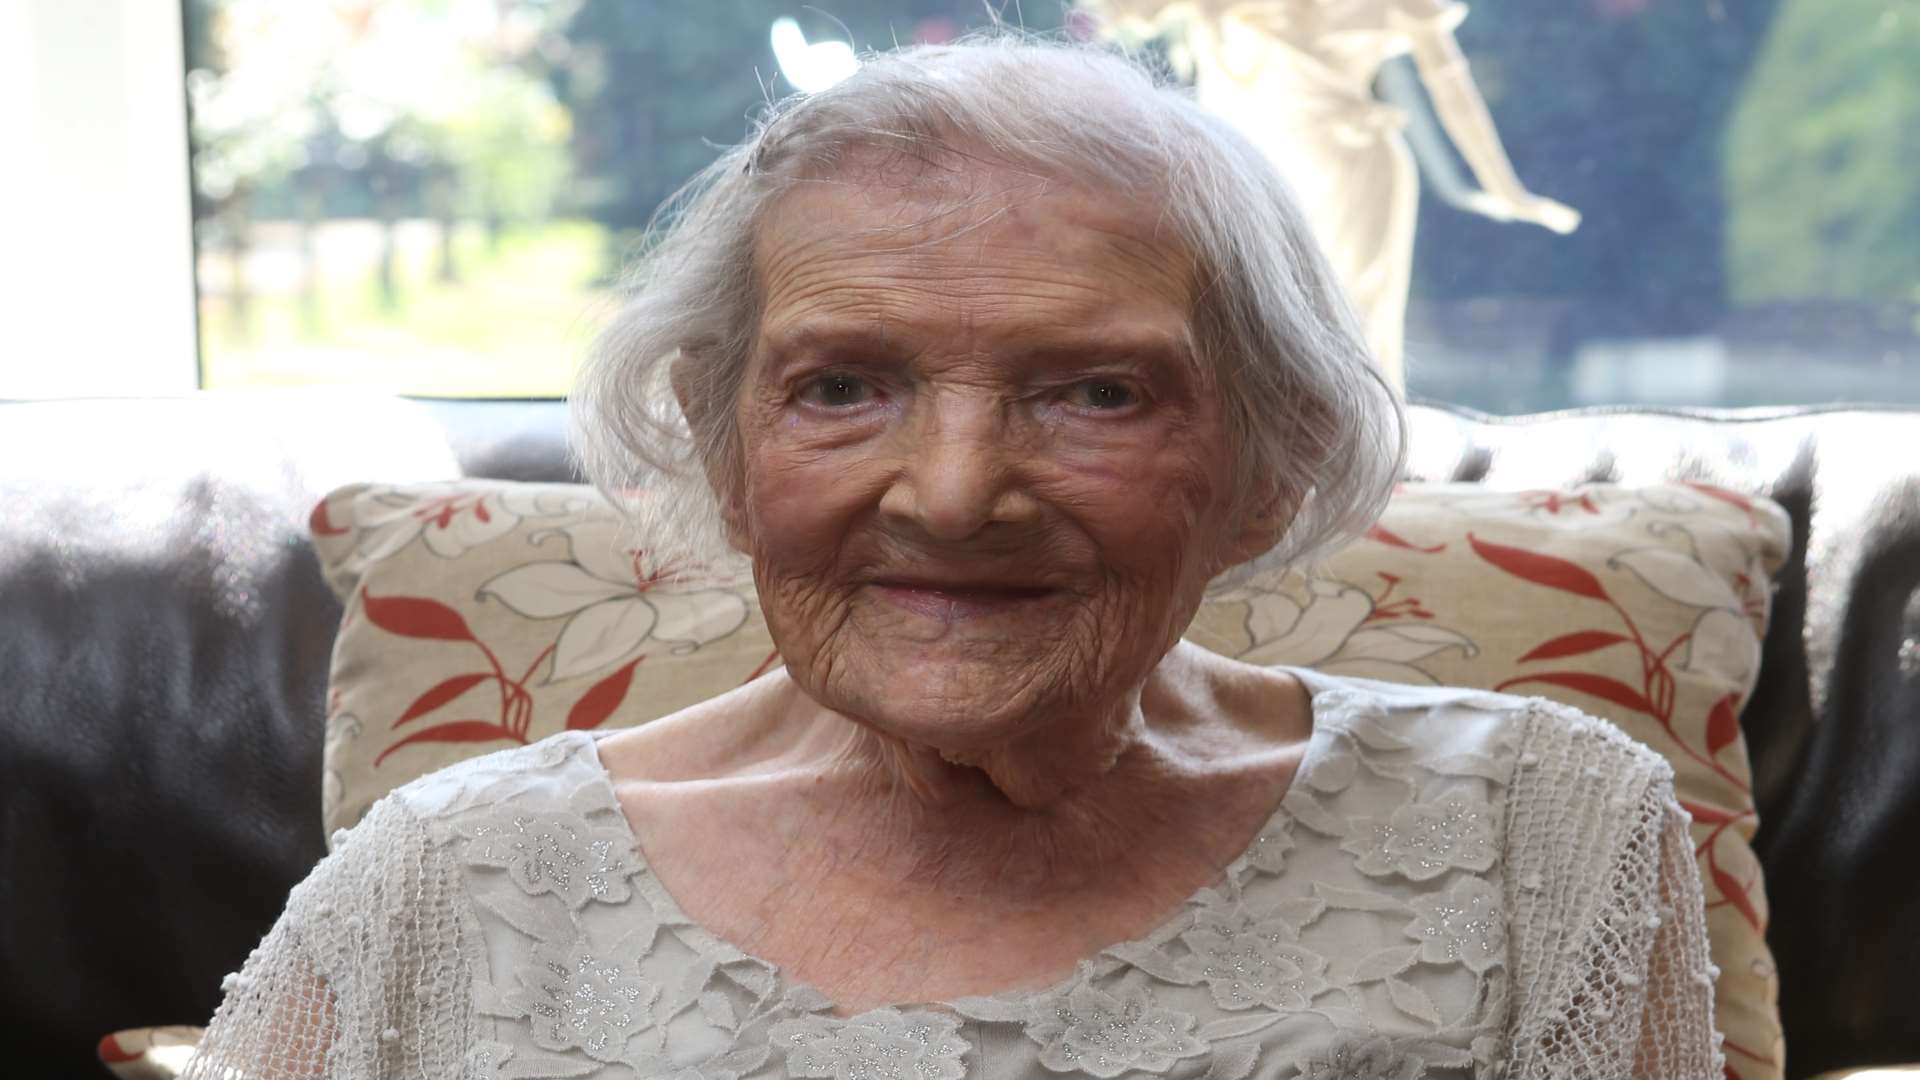 Maud Higgins turned 100 on June 3